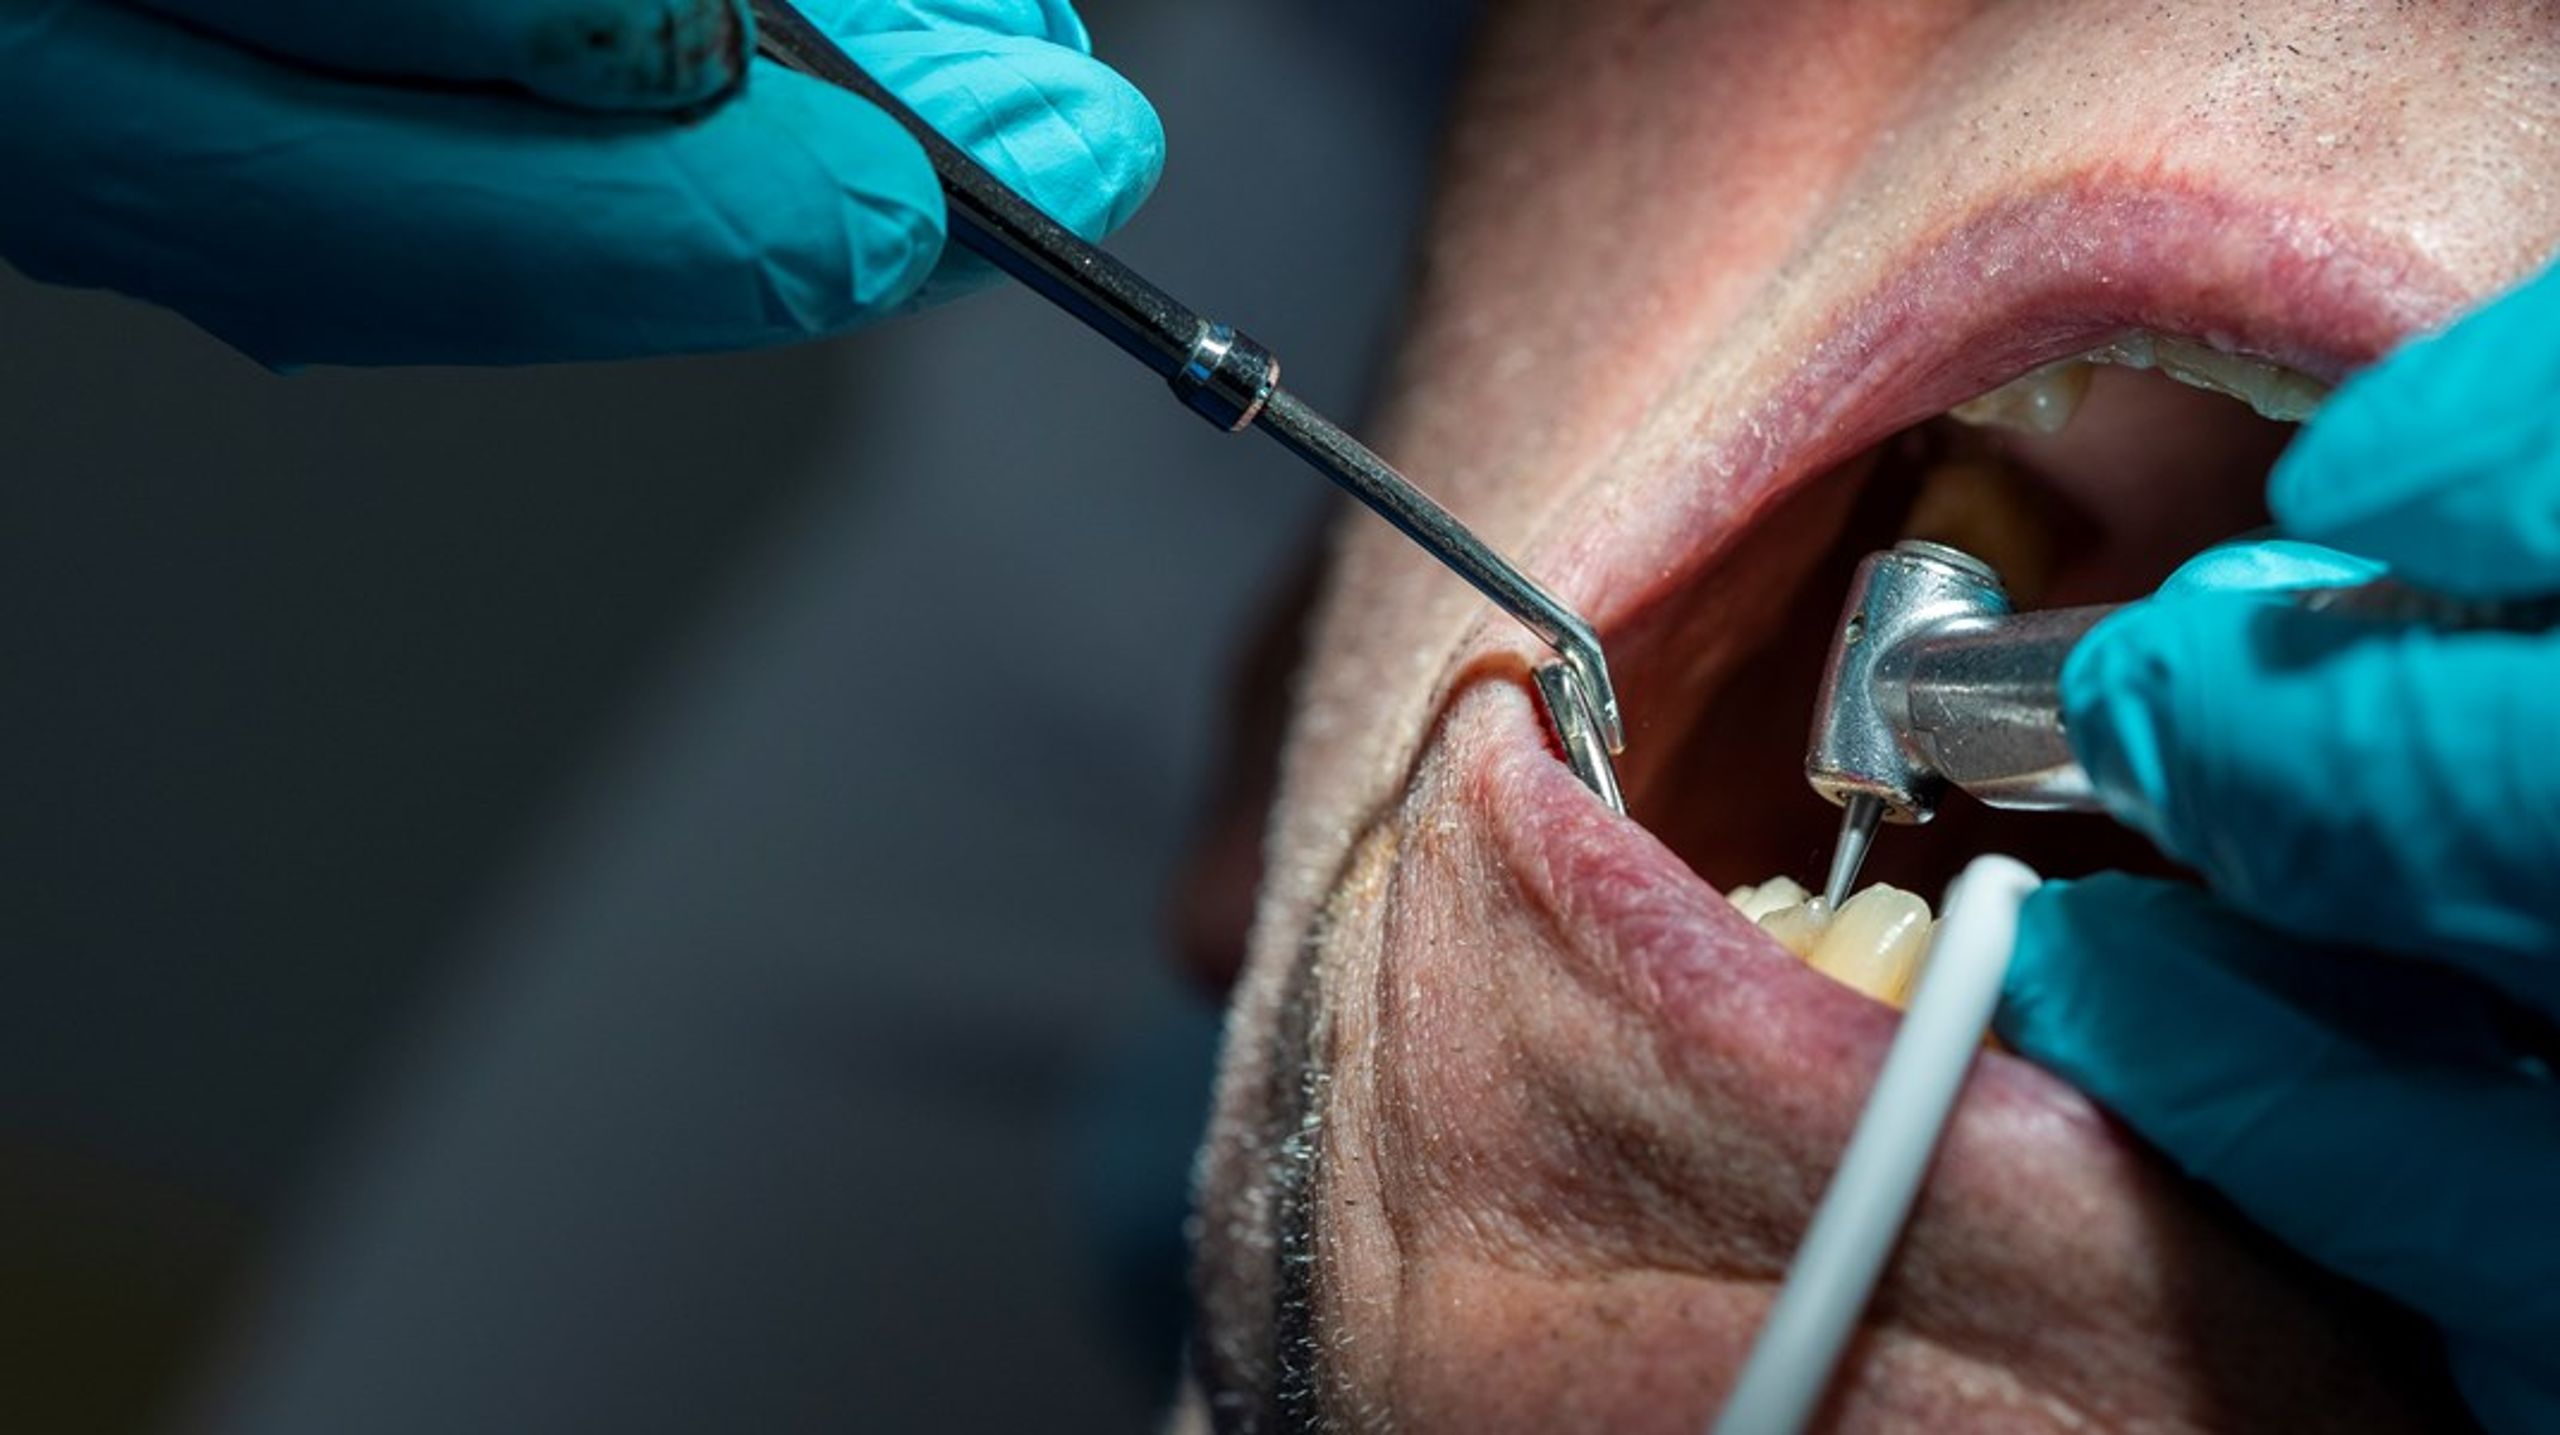 ”En stor risk med en utebliven tandvårdskontakt är en försämrad munhälsa.”